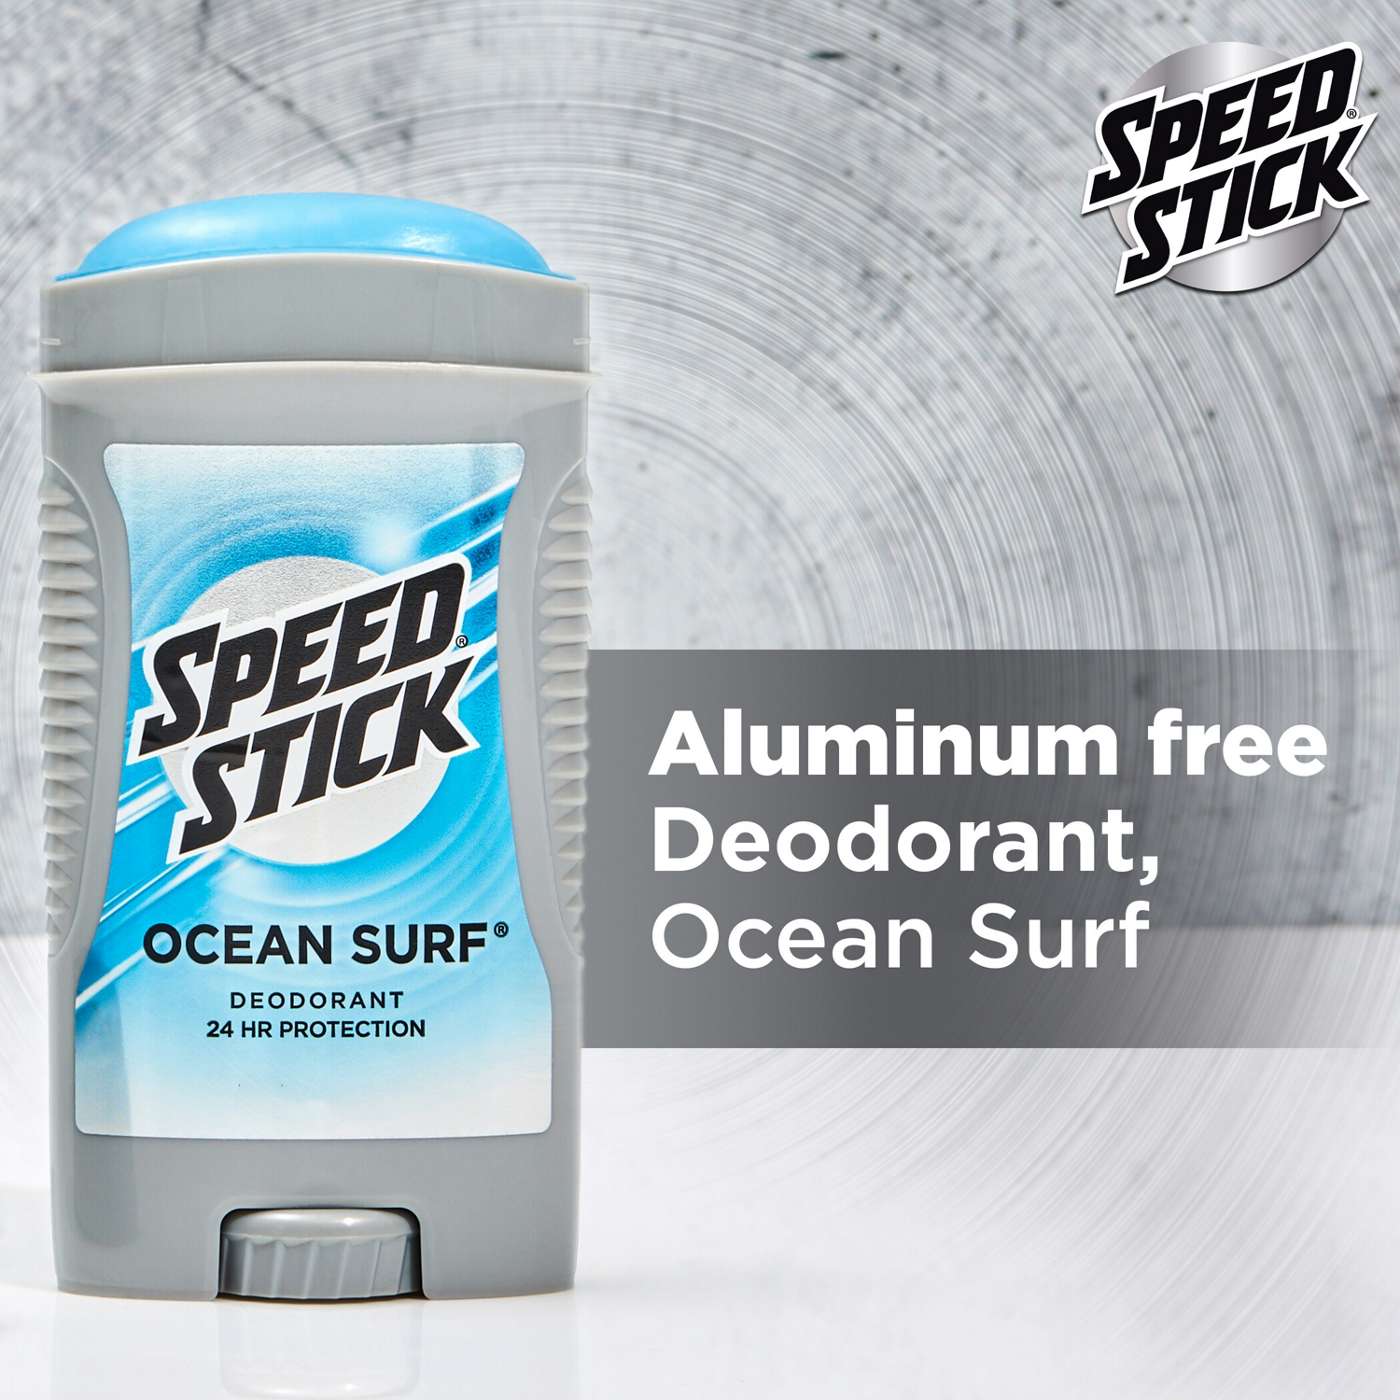 Speed Stick Ocean Surf Deodorant; image 6 of 10